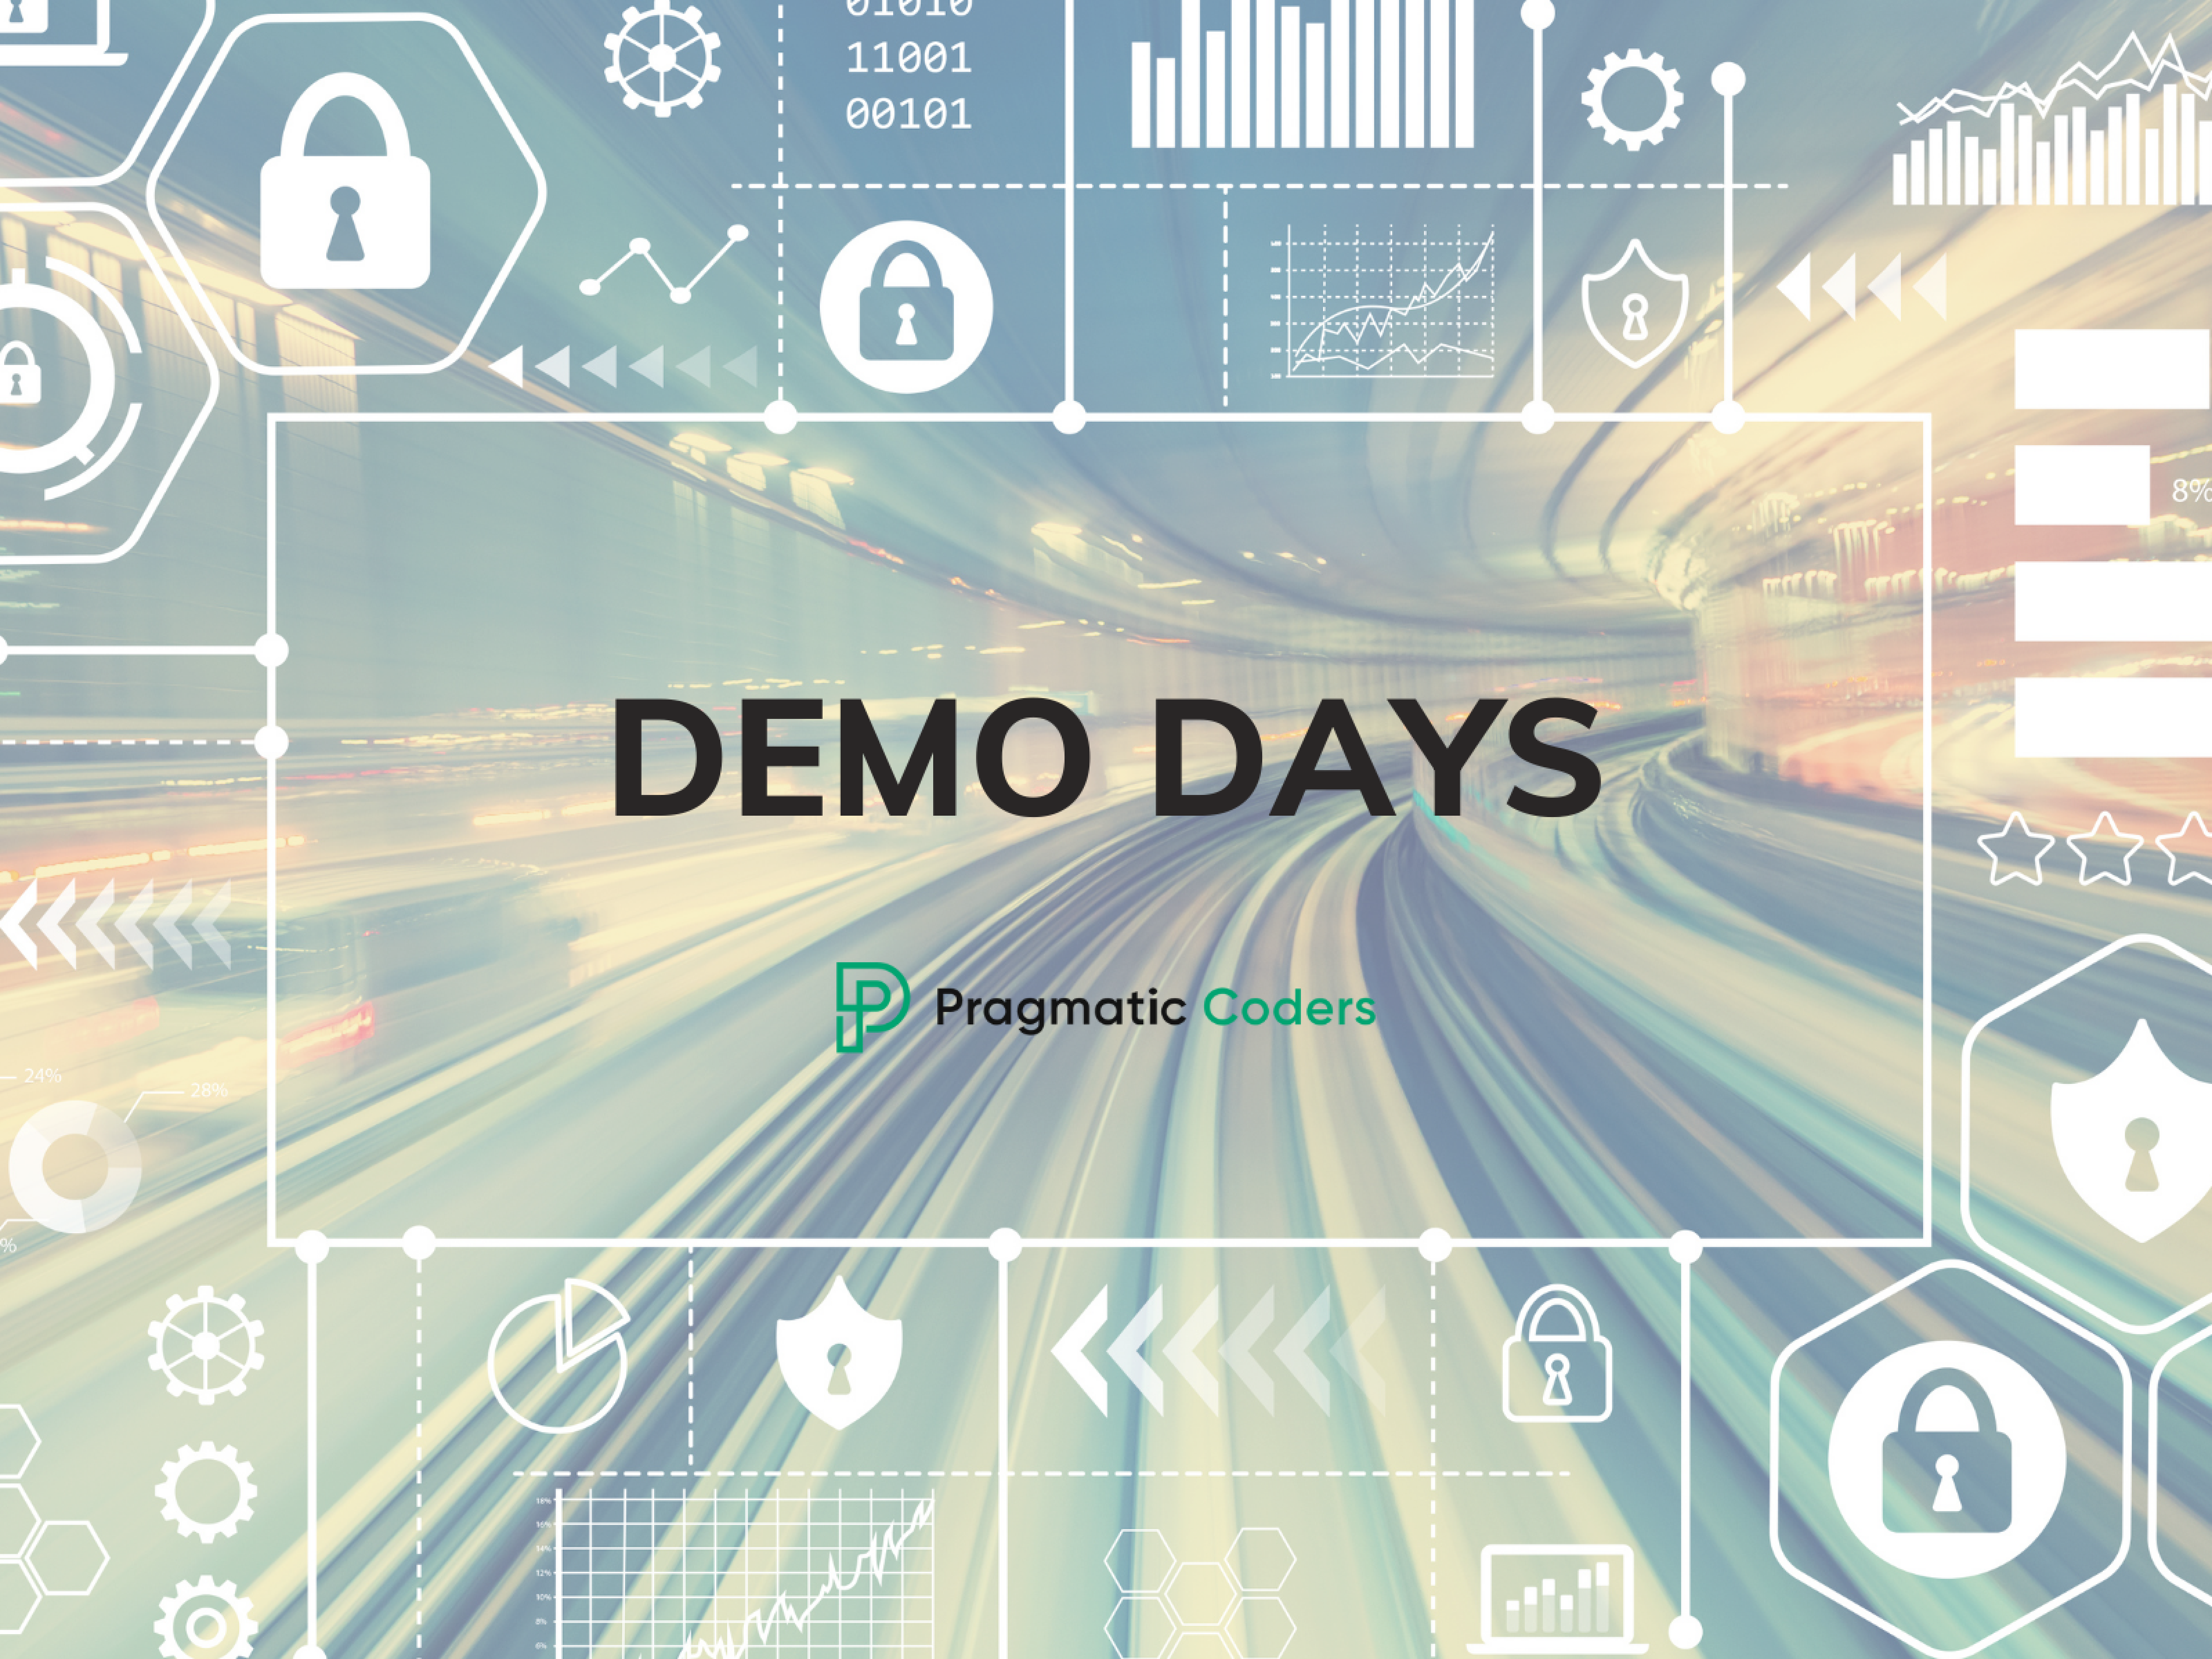 Demo Days - projektowy 